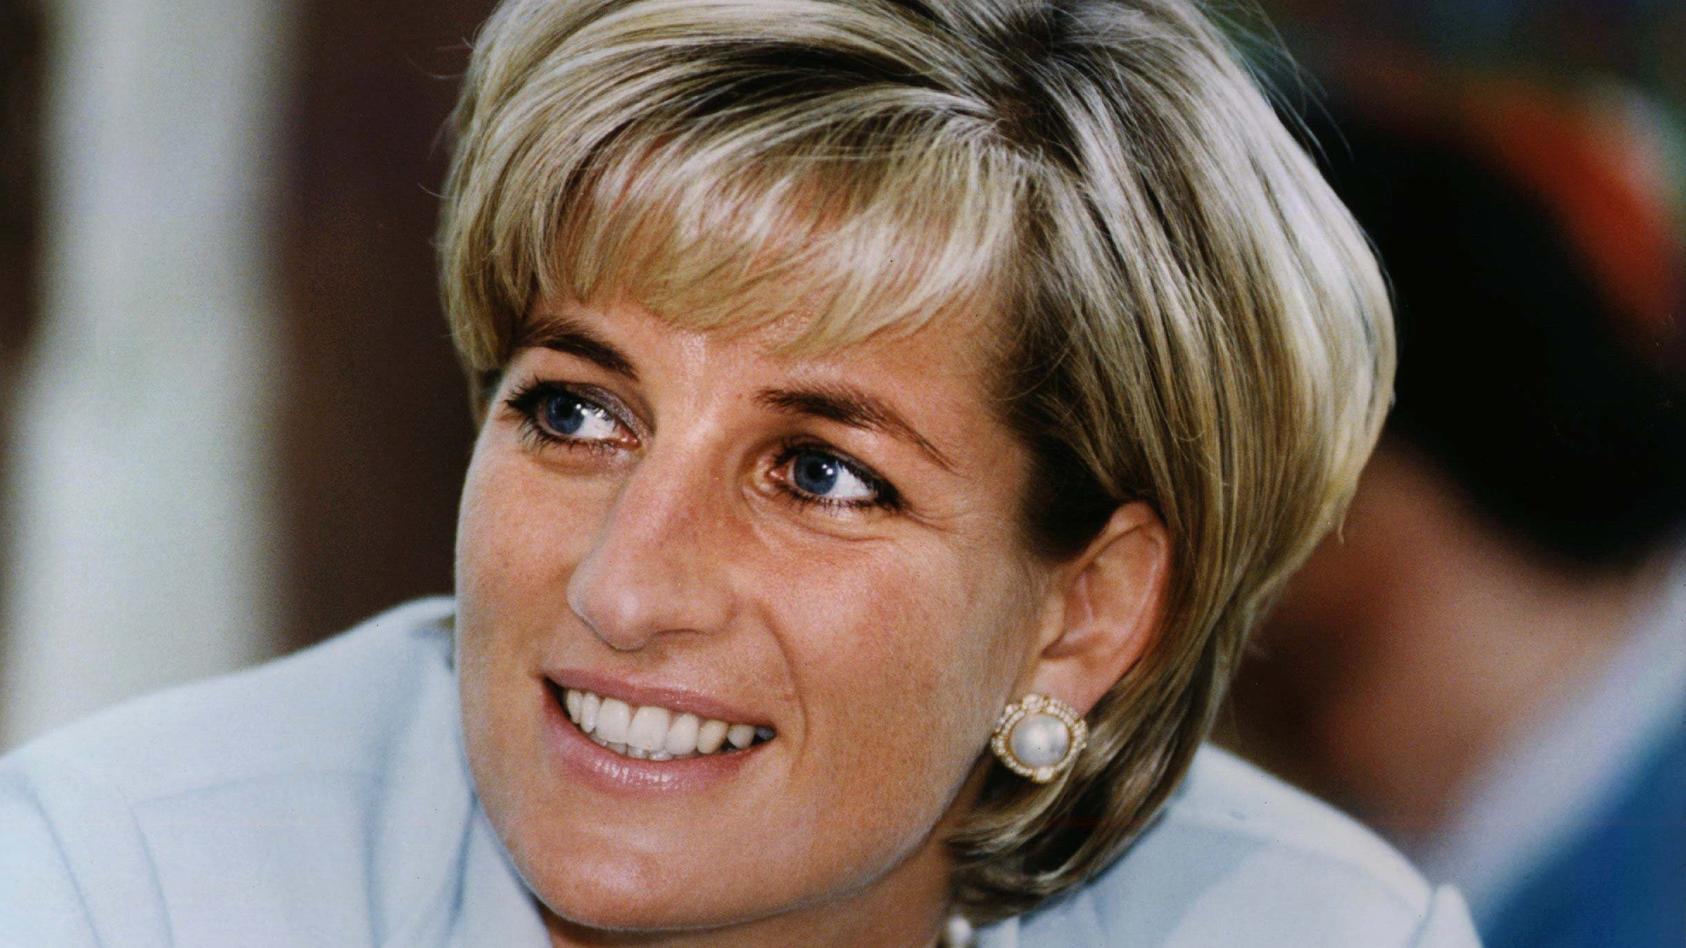 ARCHIV - 27.05.1997, Großbritannien, ---: Prinzessin Diana lächelt. Die «Prinzessin der Herzen» wäre am 01.07.2021 60 Jahre alt geworden. (zu dpa: «Burgfrieden von London: Prinzen treffen an Dianas 60. aufeinander») Foto: epa PA Stillwell/epa/PA/dpa 